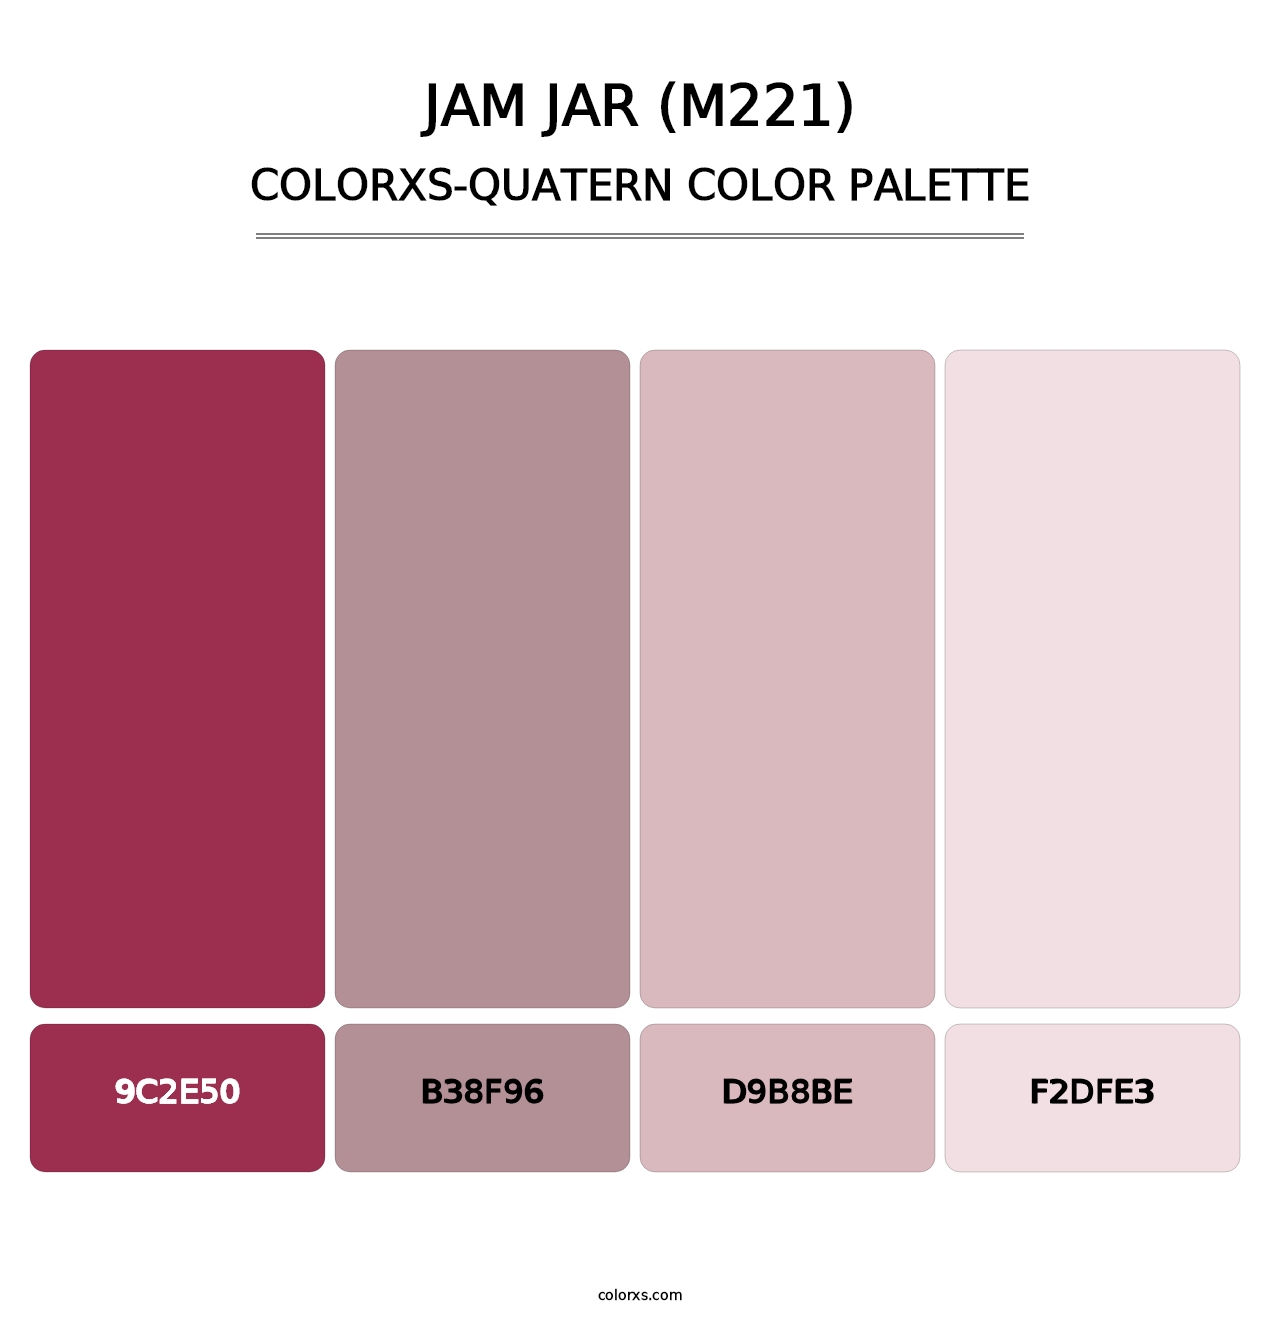 Jam Jar (M221) - Colorxs Quatern Palette